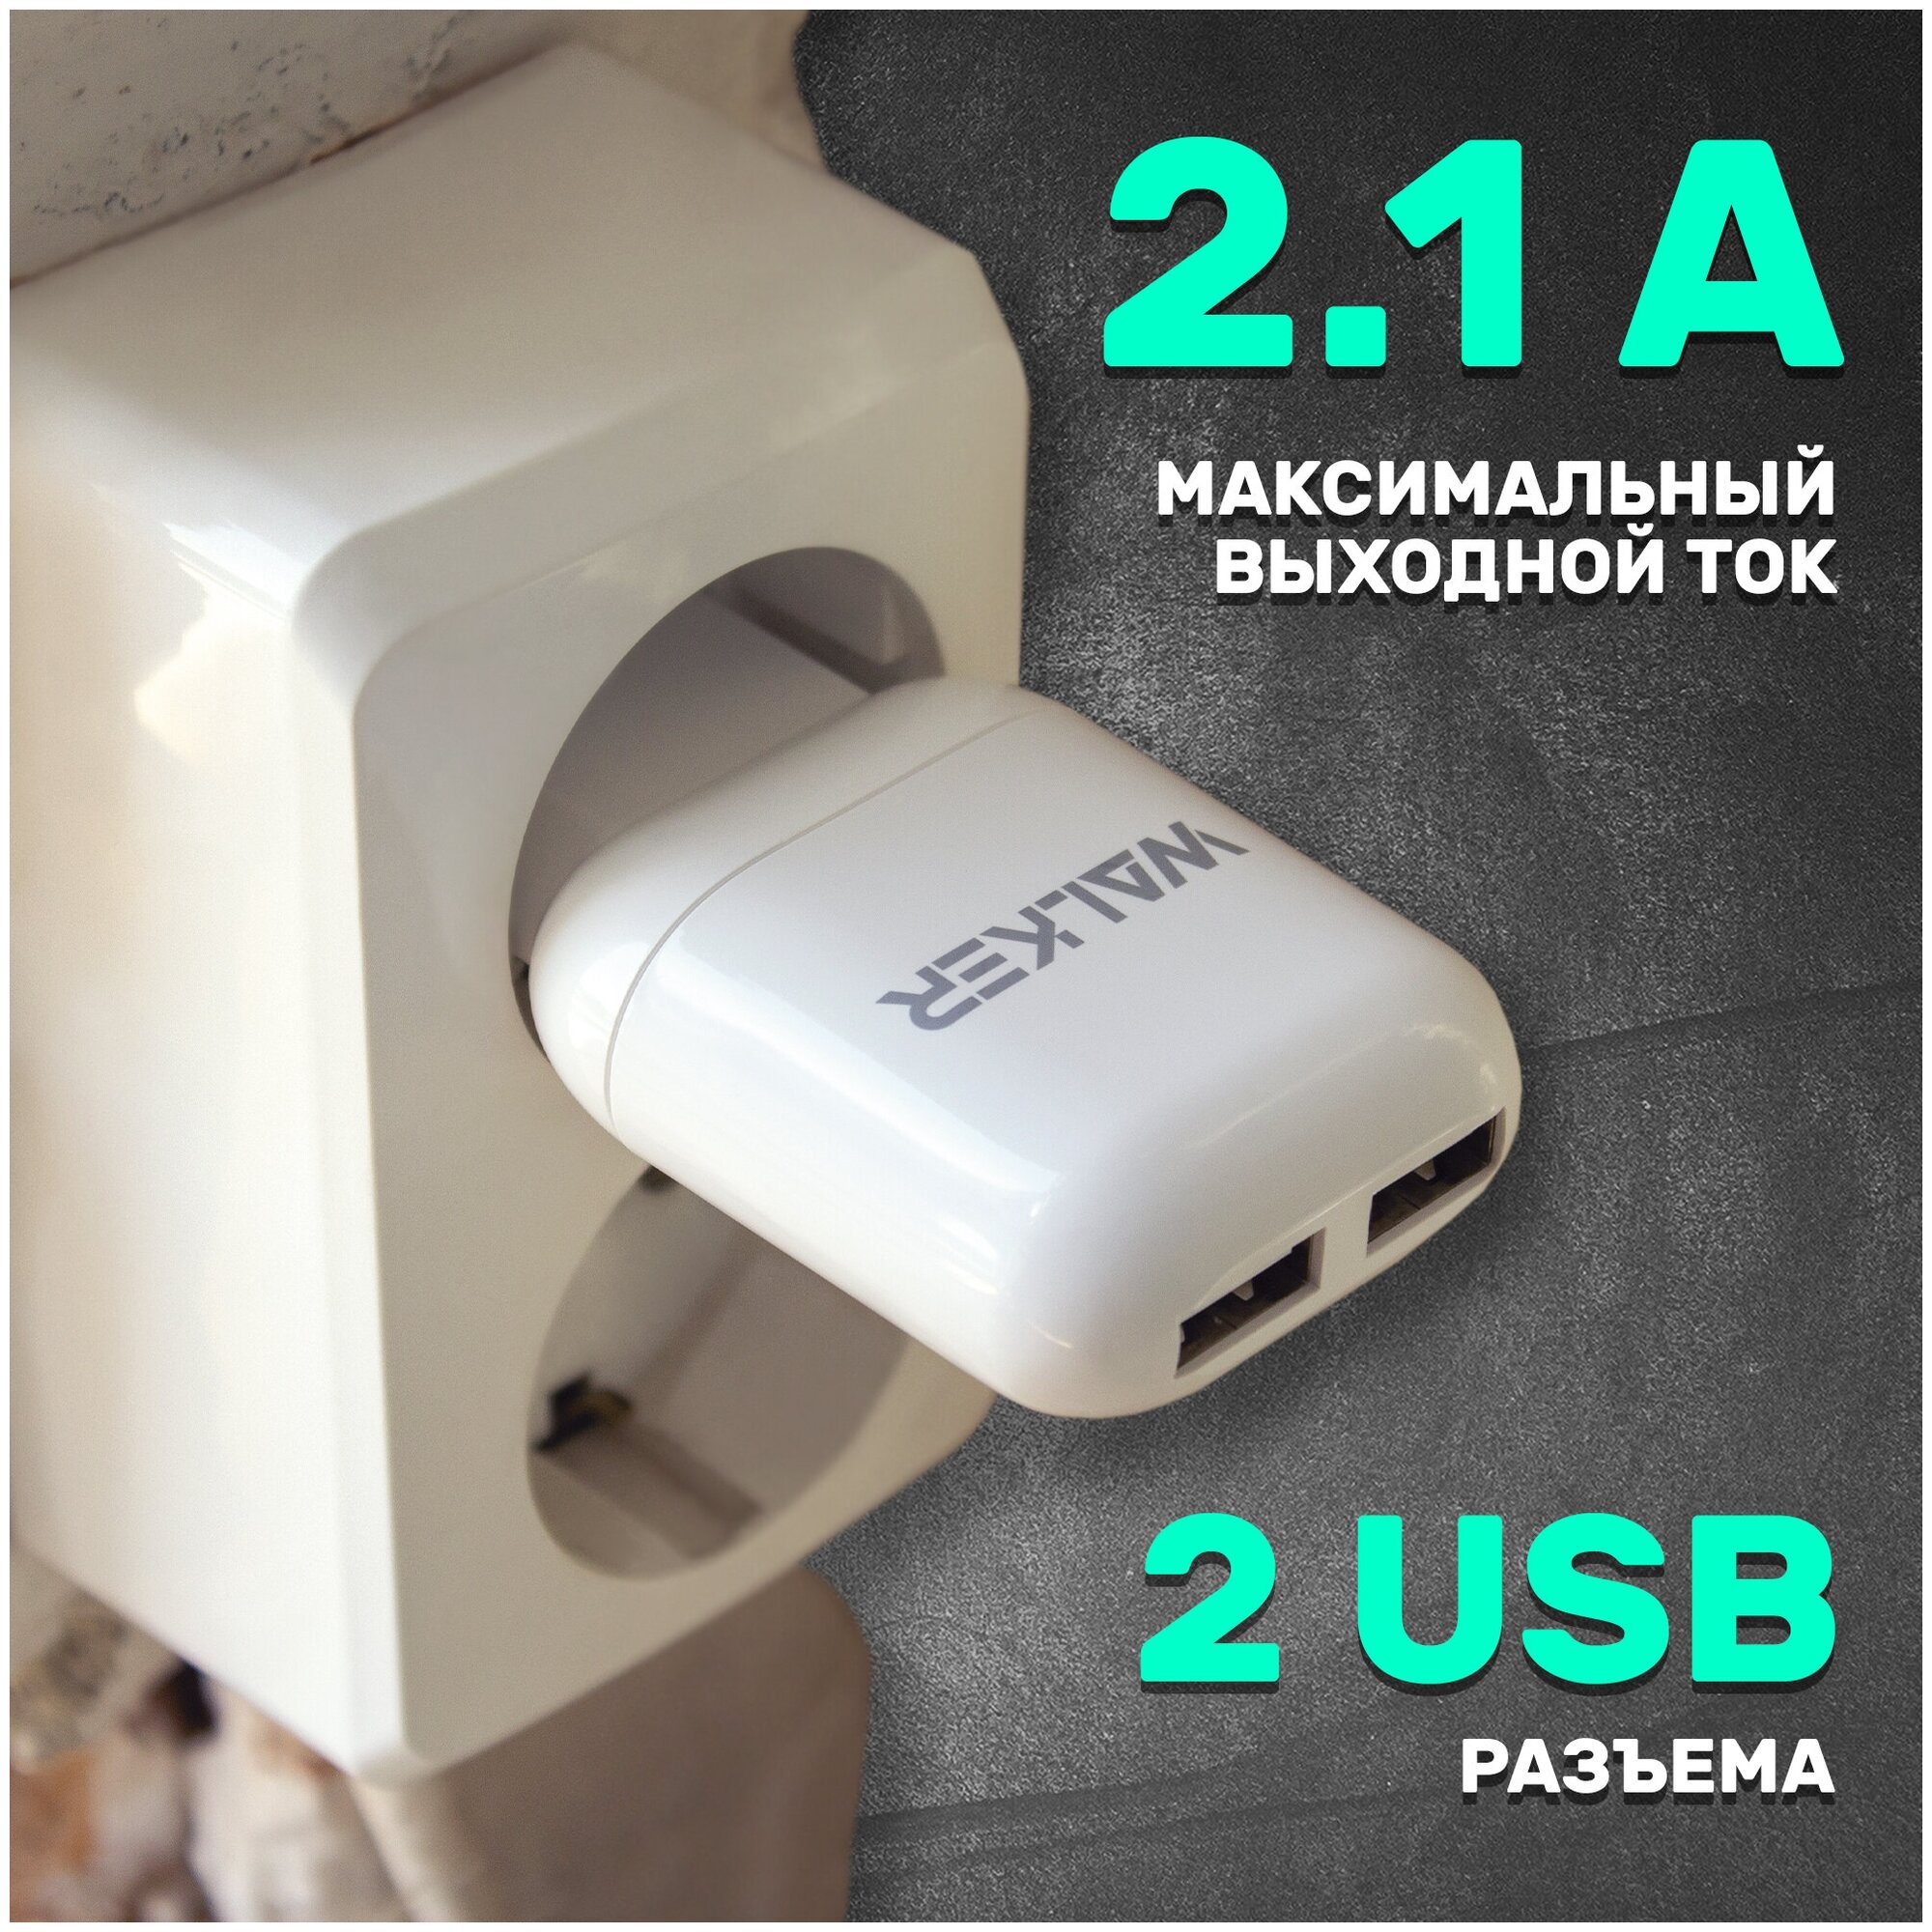 Зарядное устройство для телефона, 2 USB разъема по 2.1A, мощность 10W, WALKER, WH-33, белое / сетевая зарядка на android, блок питания на айфон